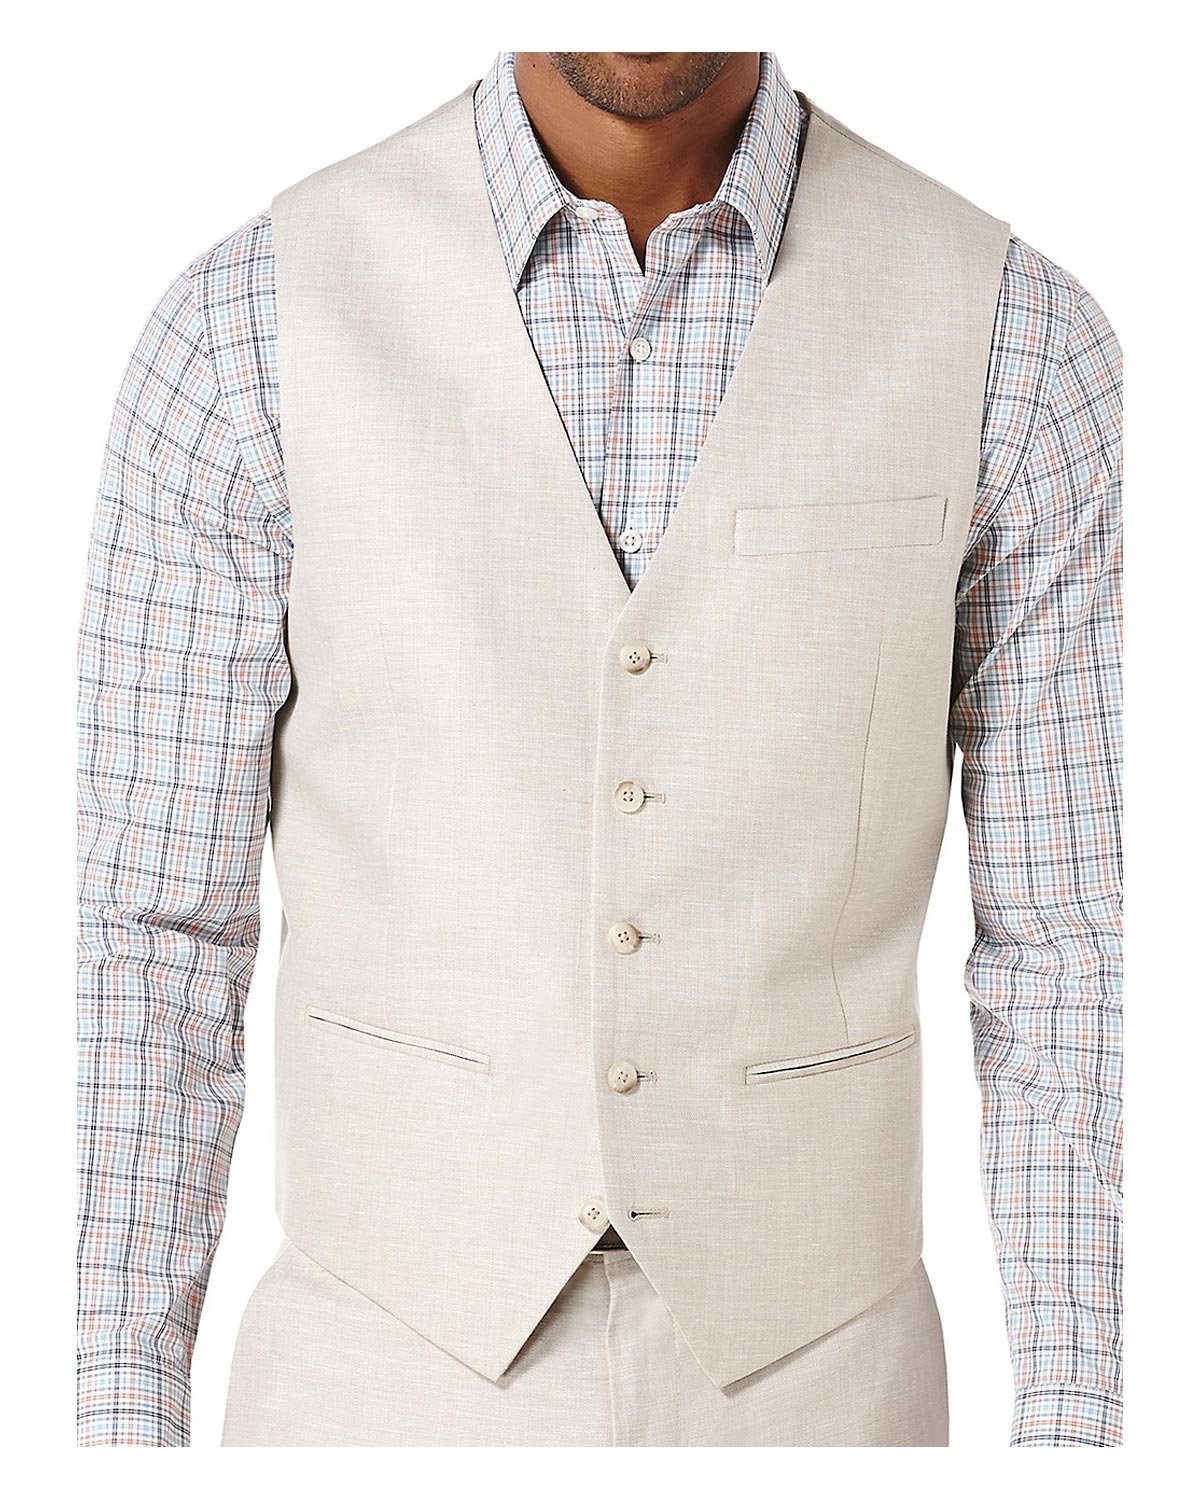 Perry Ellis Men's Linen Suit Vest